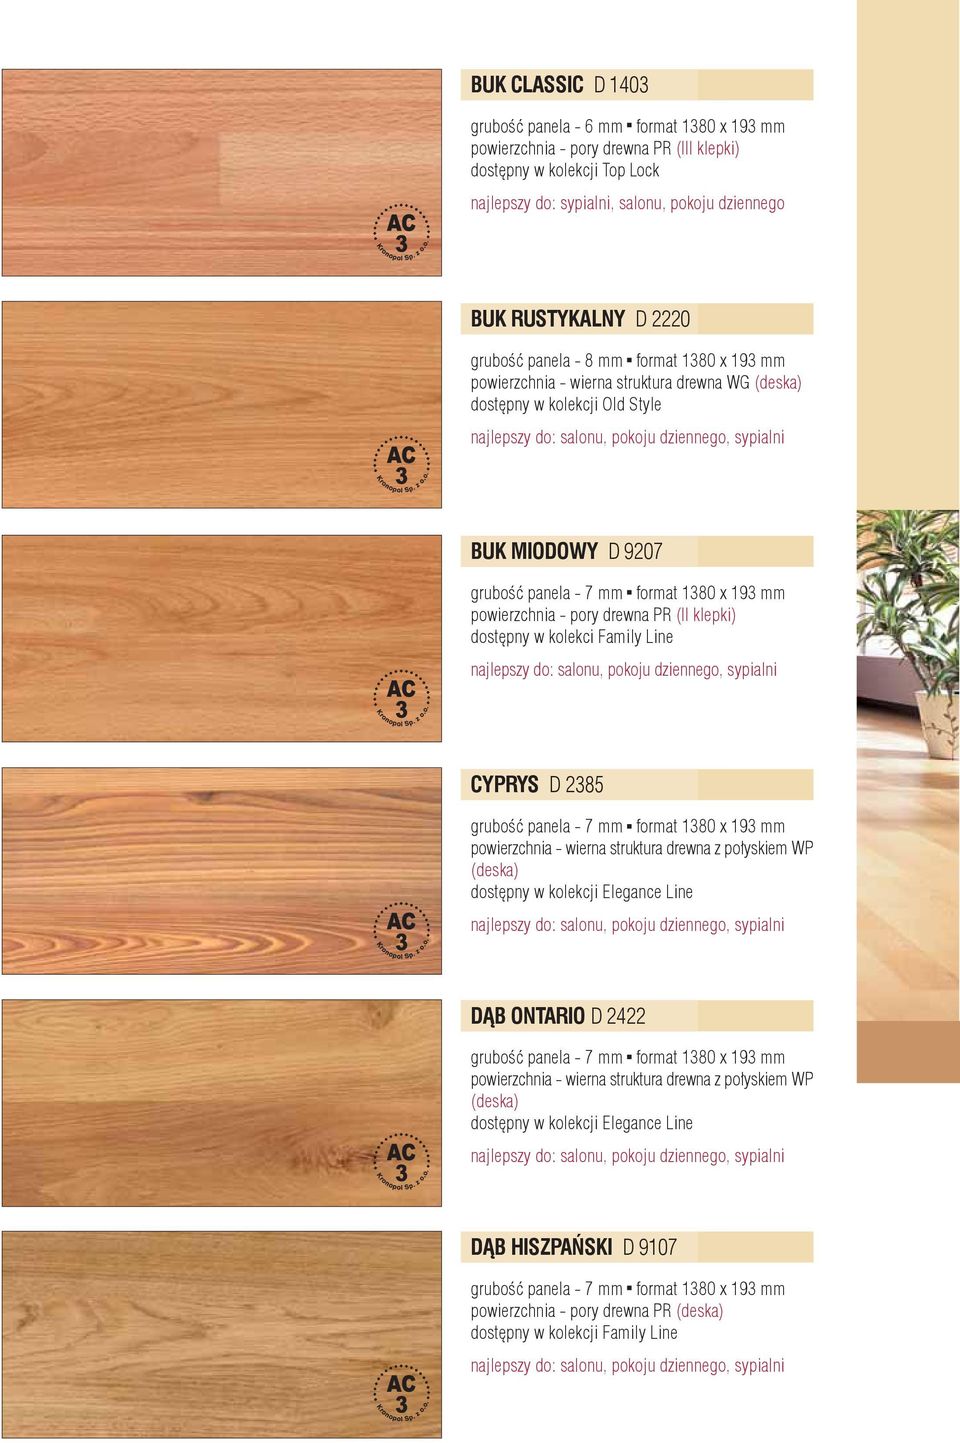 Family Line CYPRYS D 2385 powierzchnia - wierna struktura drewna z połyskiem WP (deska) dostępny w kolekcji Elegance Line DĄB ONTARIO D 2422 powierzchnia - wierna